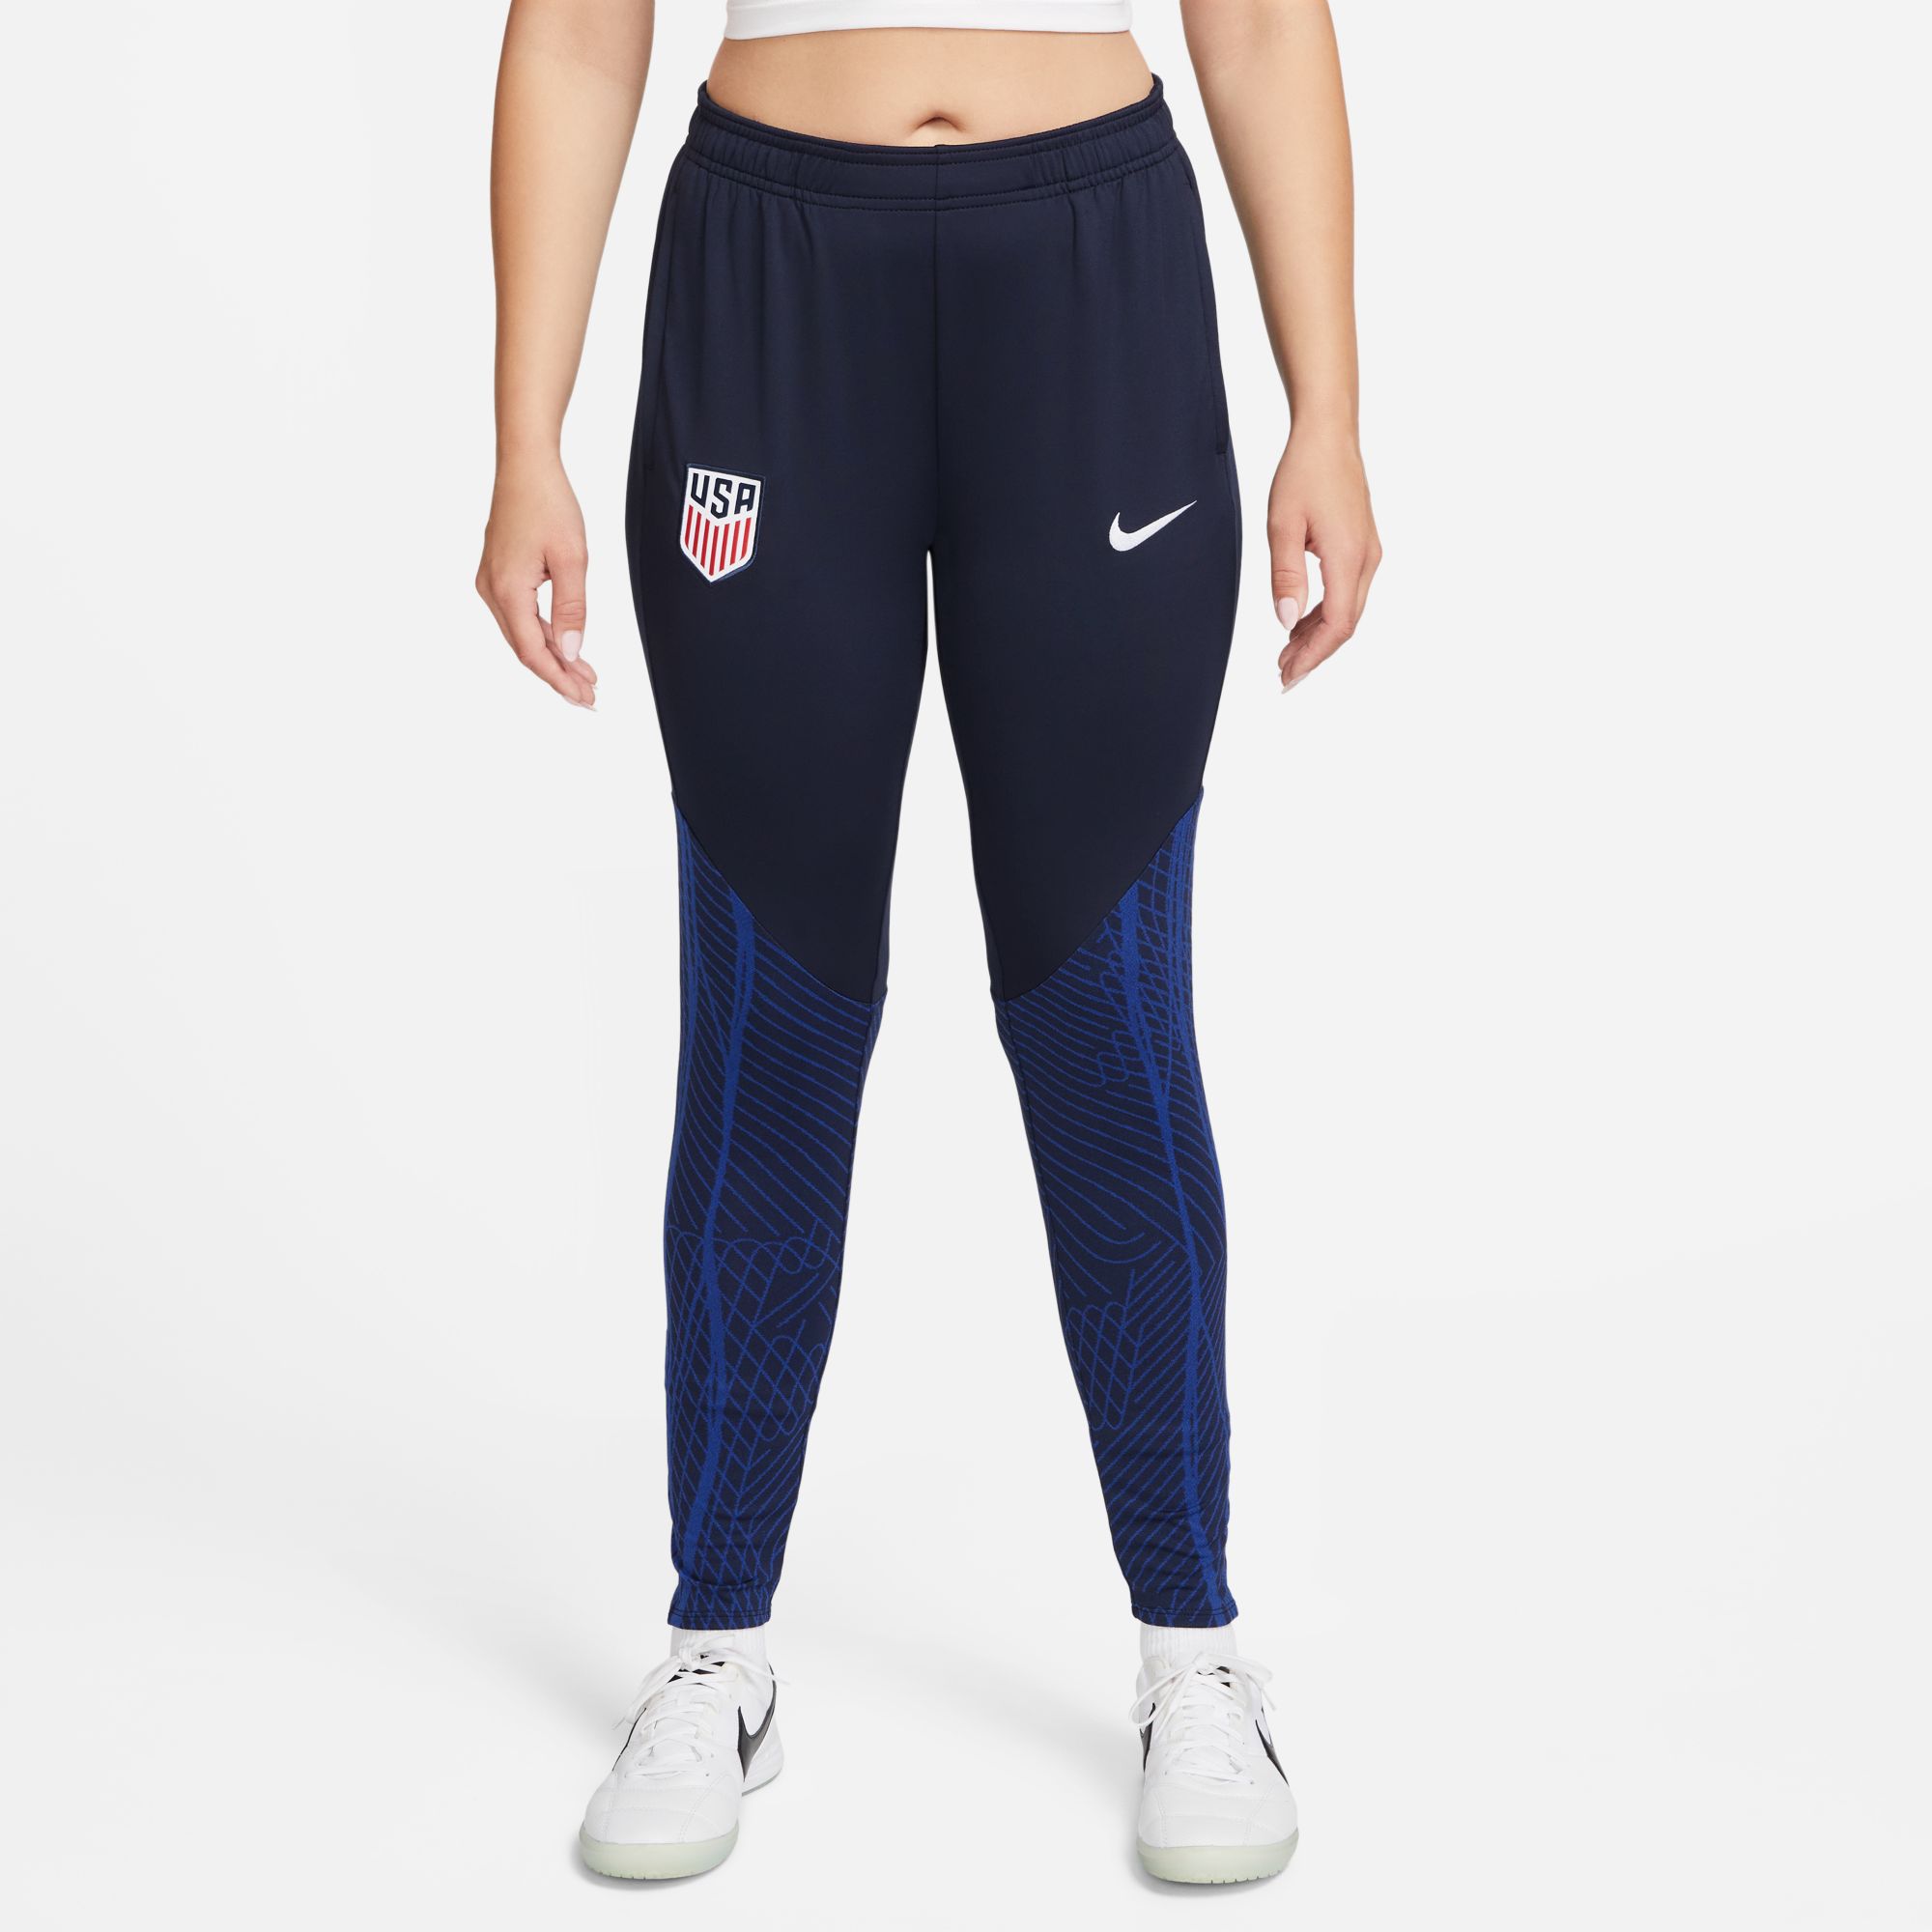 stefanssoccer.com:Nike Women's USA 2022 Strike Training Pants - Navy